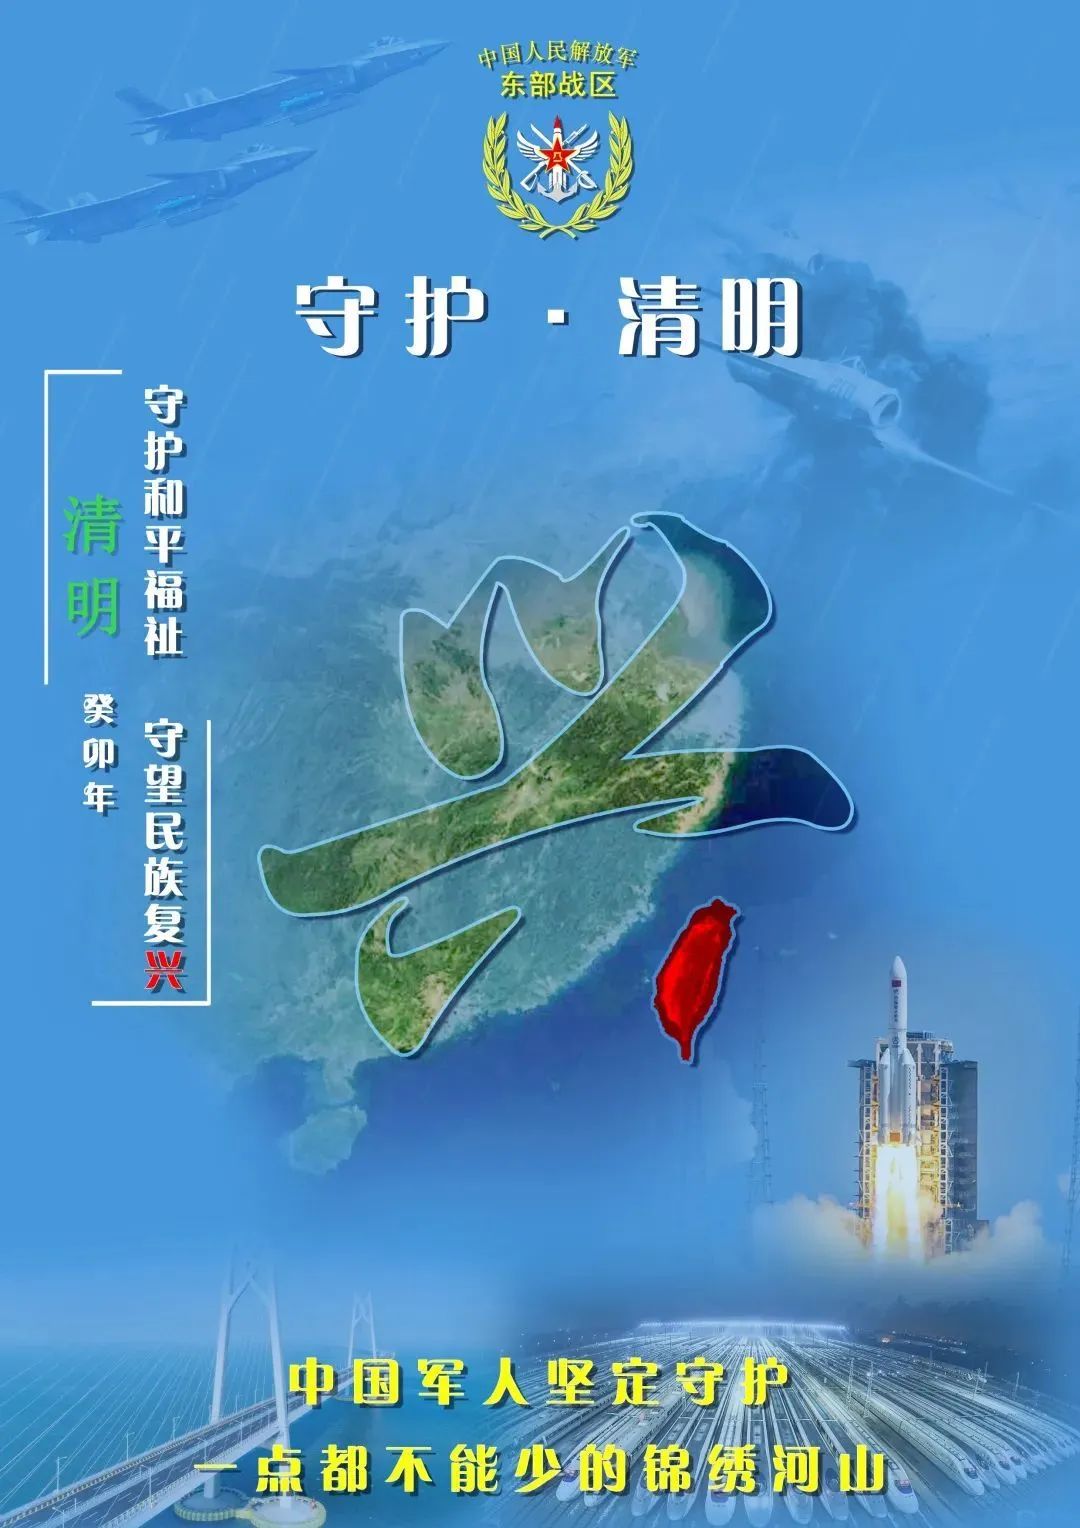 东部战区发布追思海报 台湾岛地图高亮融入中国全图